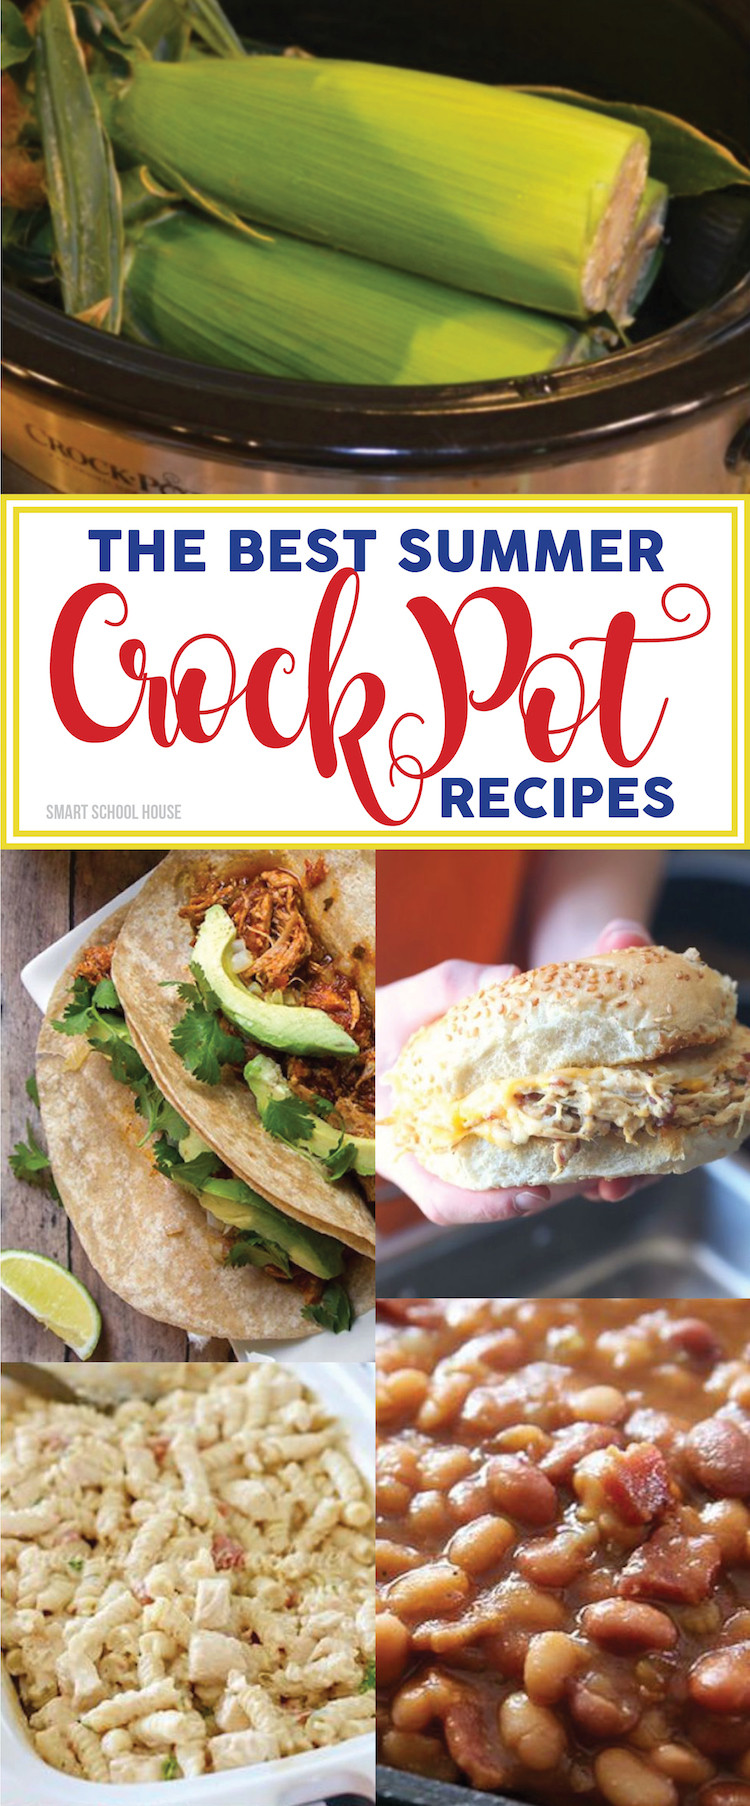 Crock Pot Dinner Ideas
 Summer Crock Pot Recipes Smart School House